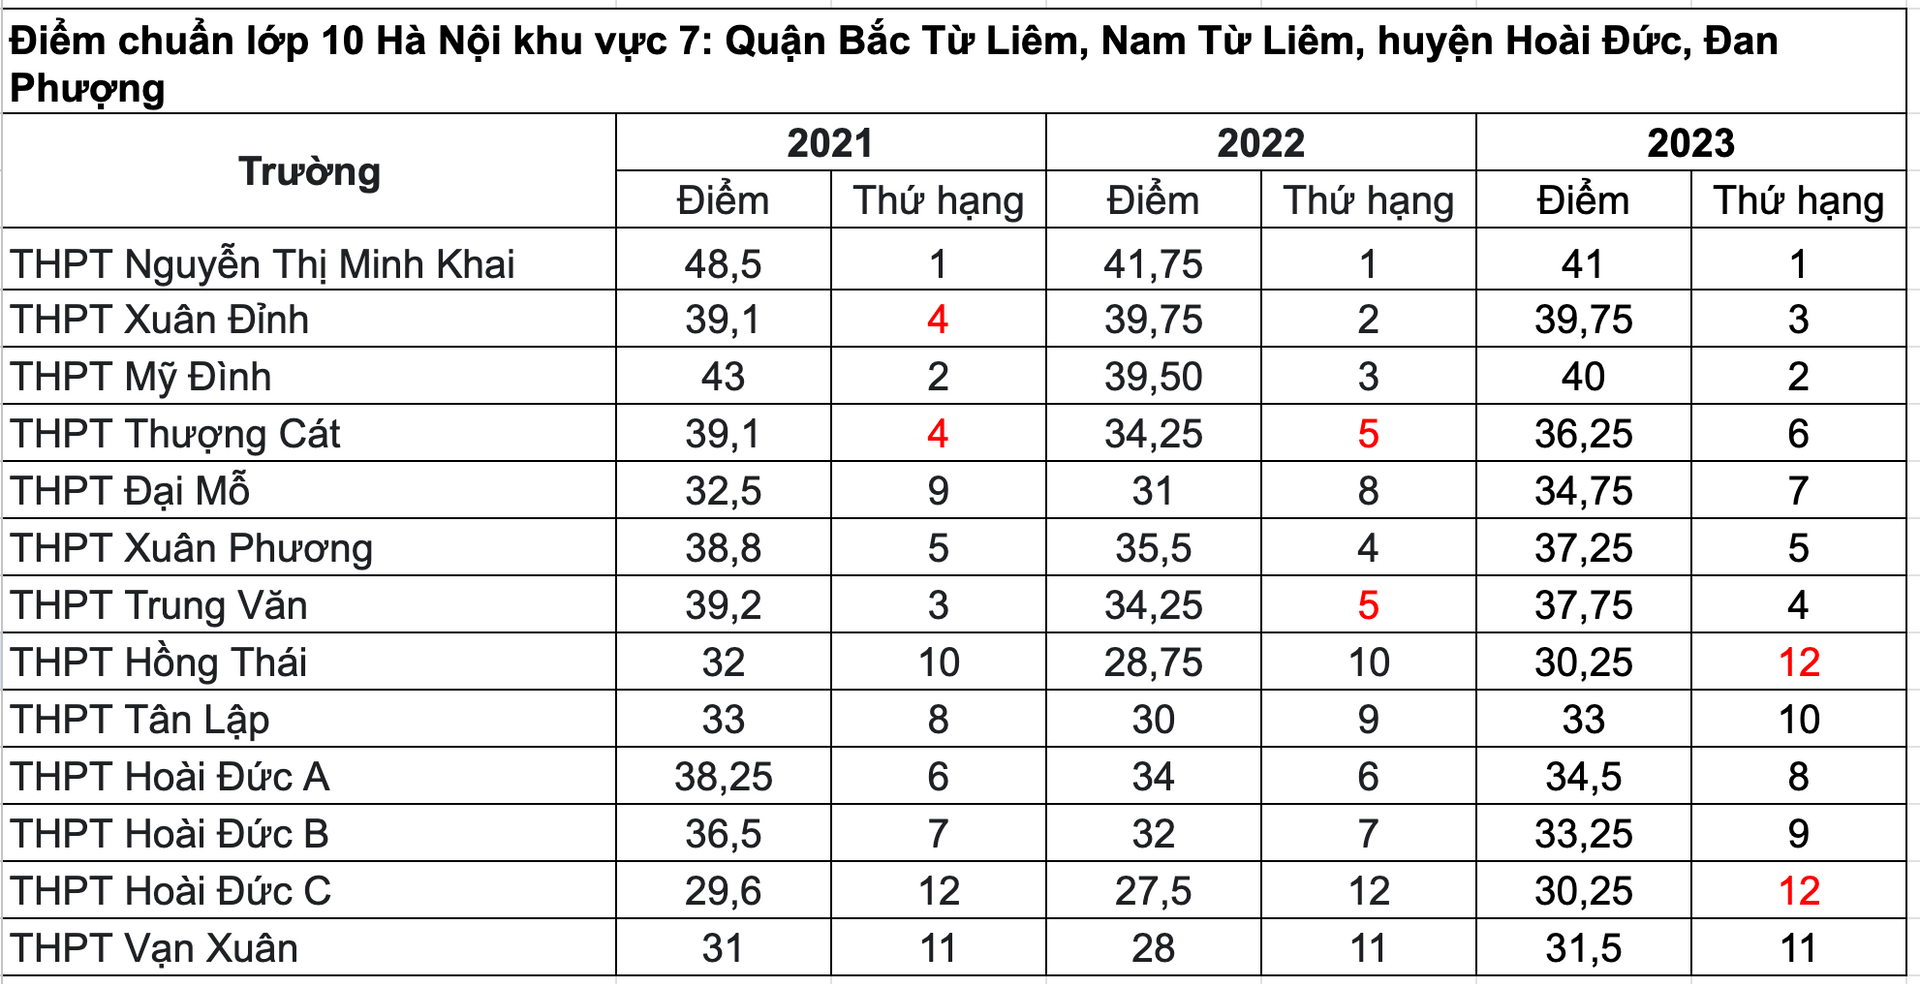 Điểm chuẩn TUYỂN SINH LỚP 10 các trường của Hà Nội 3 năm gần đây- Ảnh 7.